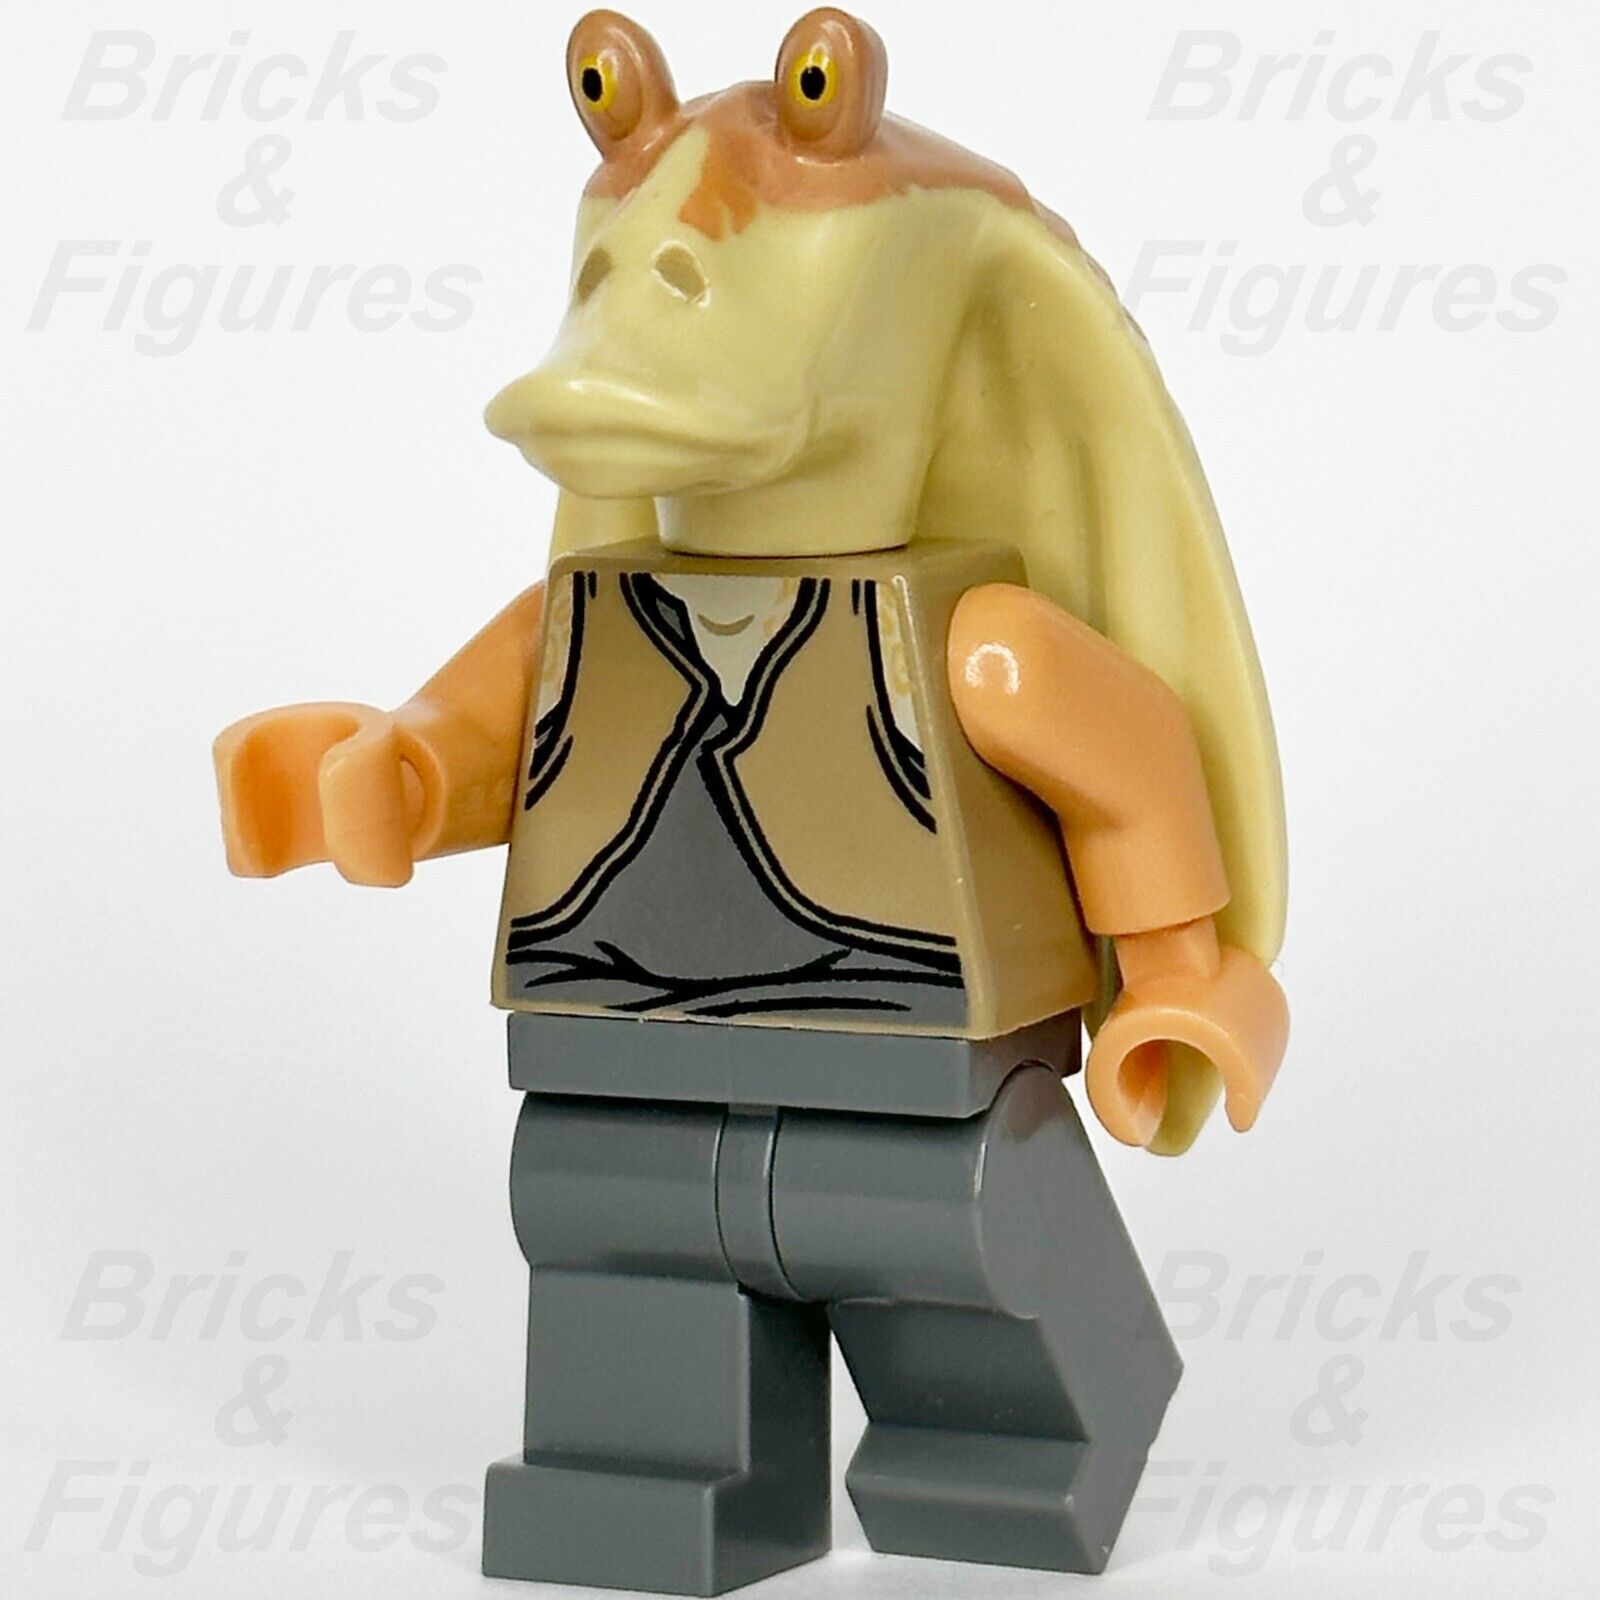 LEGO Star Wars Jar Jar Binks Minifigure Gungan General 75080 9499 7929 sw0301 1